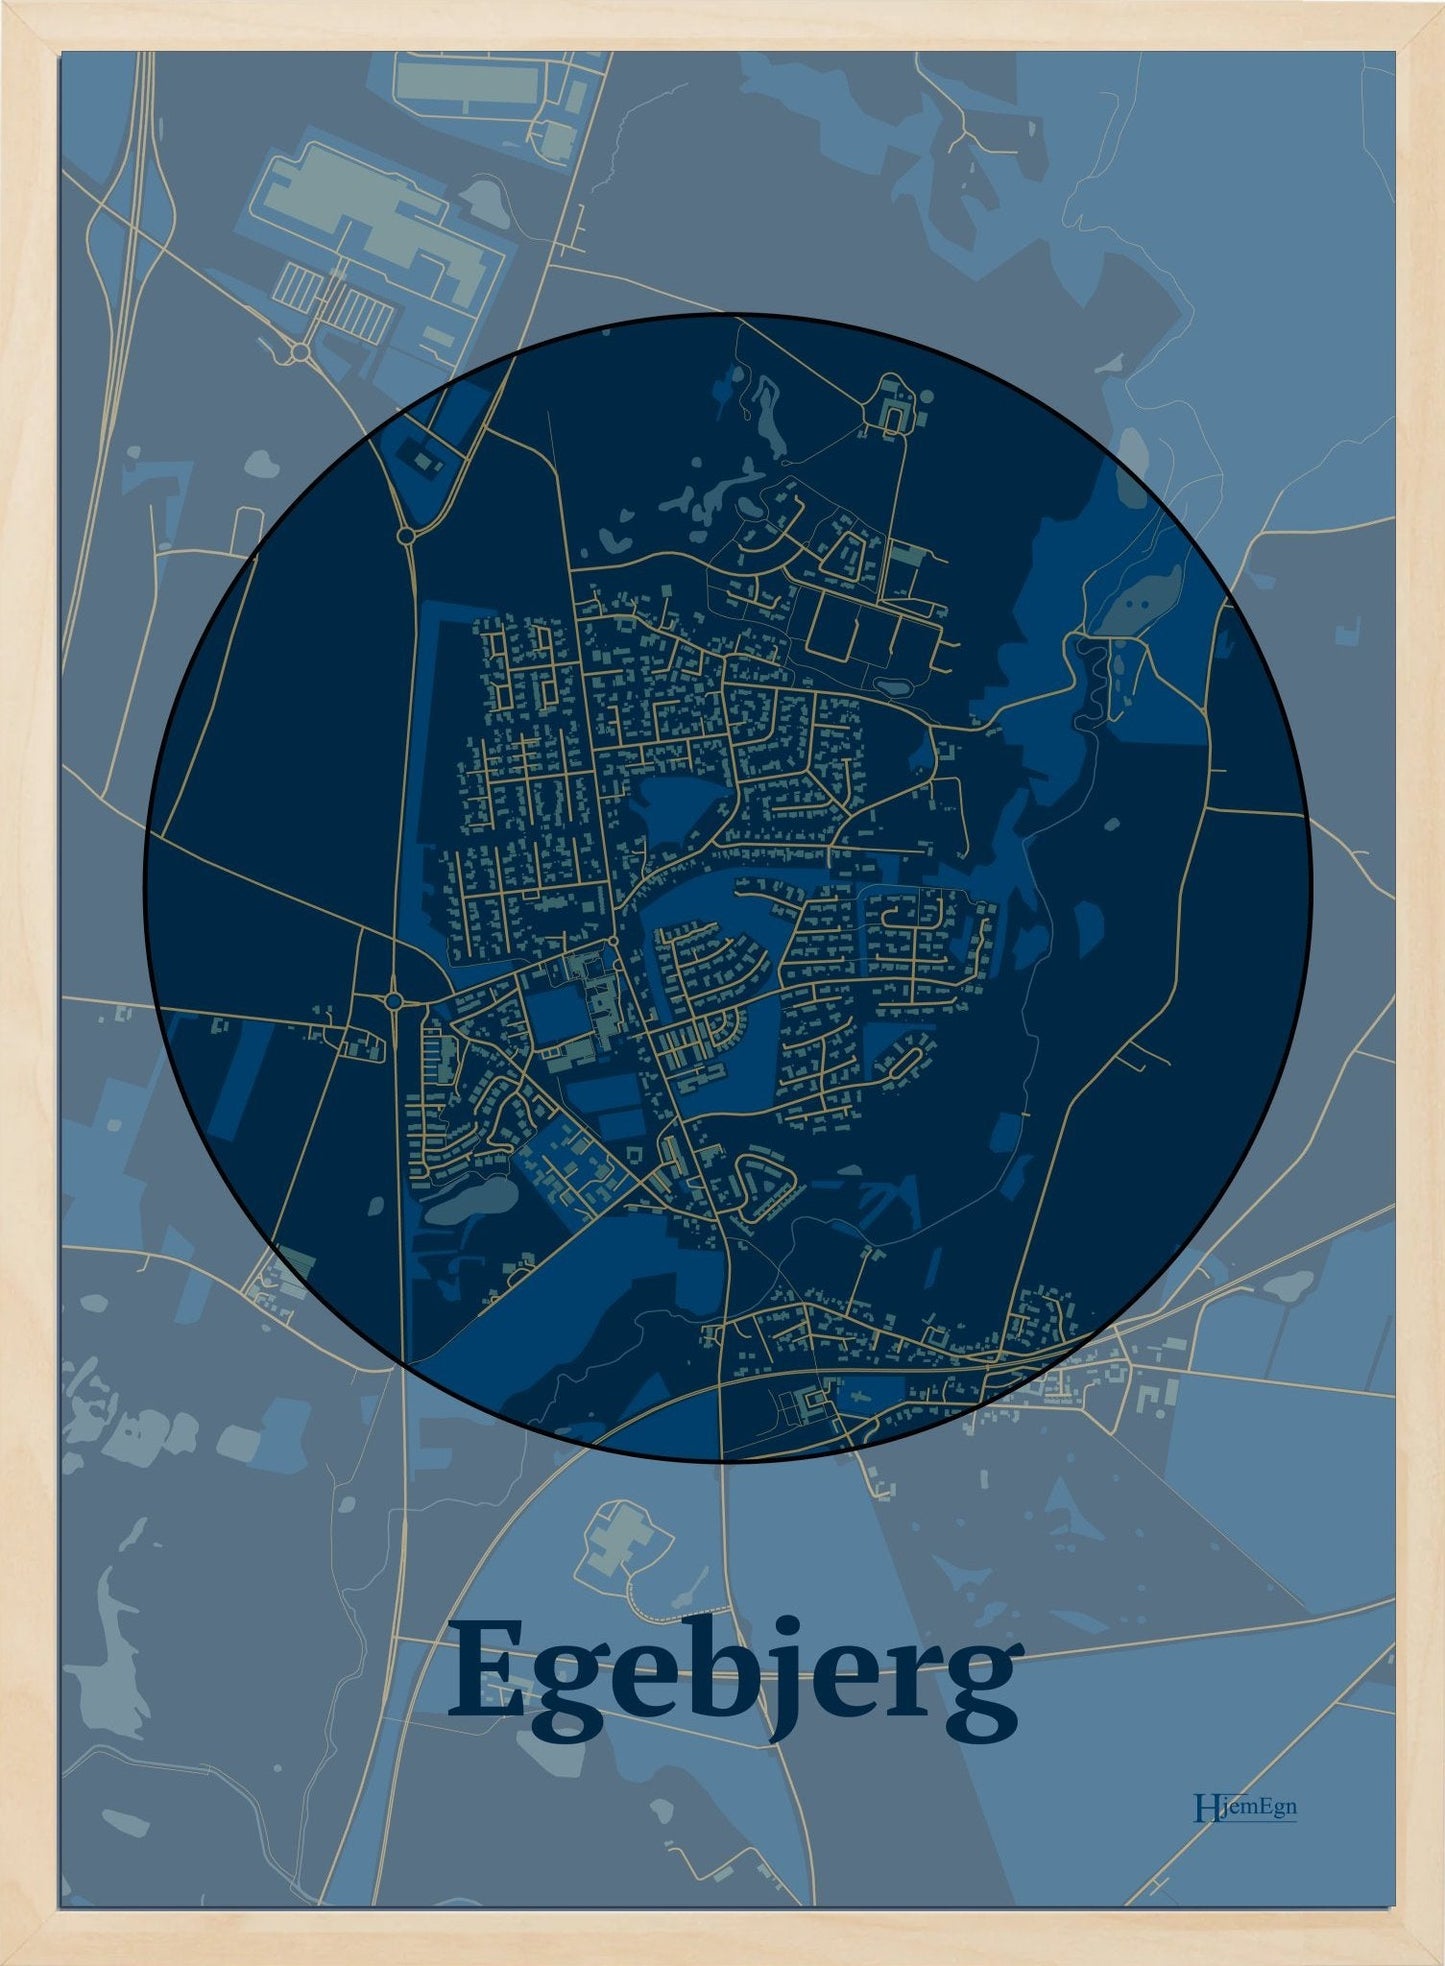 Egebjerg plakat i farve mørk blå og HjemEgn.dk design centrum. Design bykort for Egebjerg